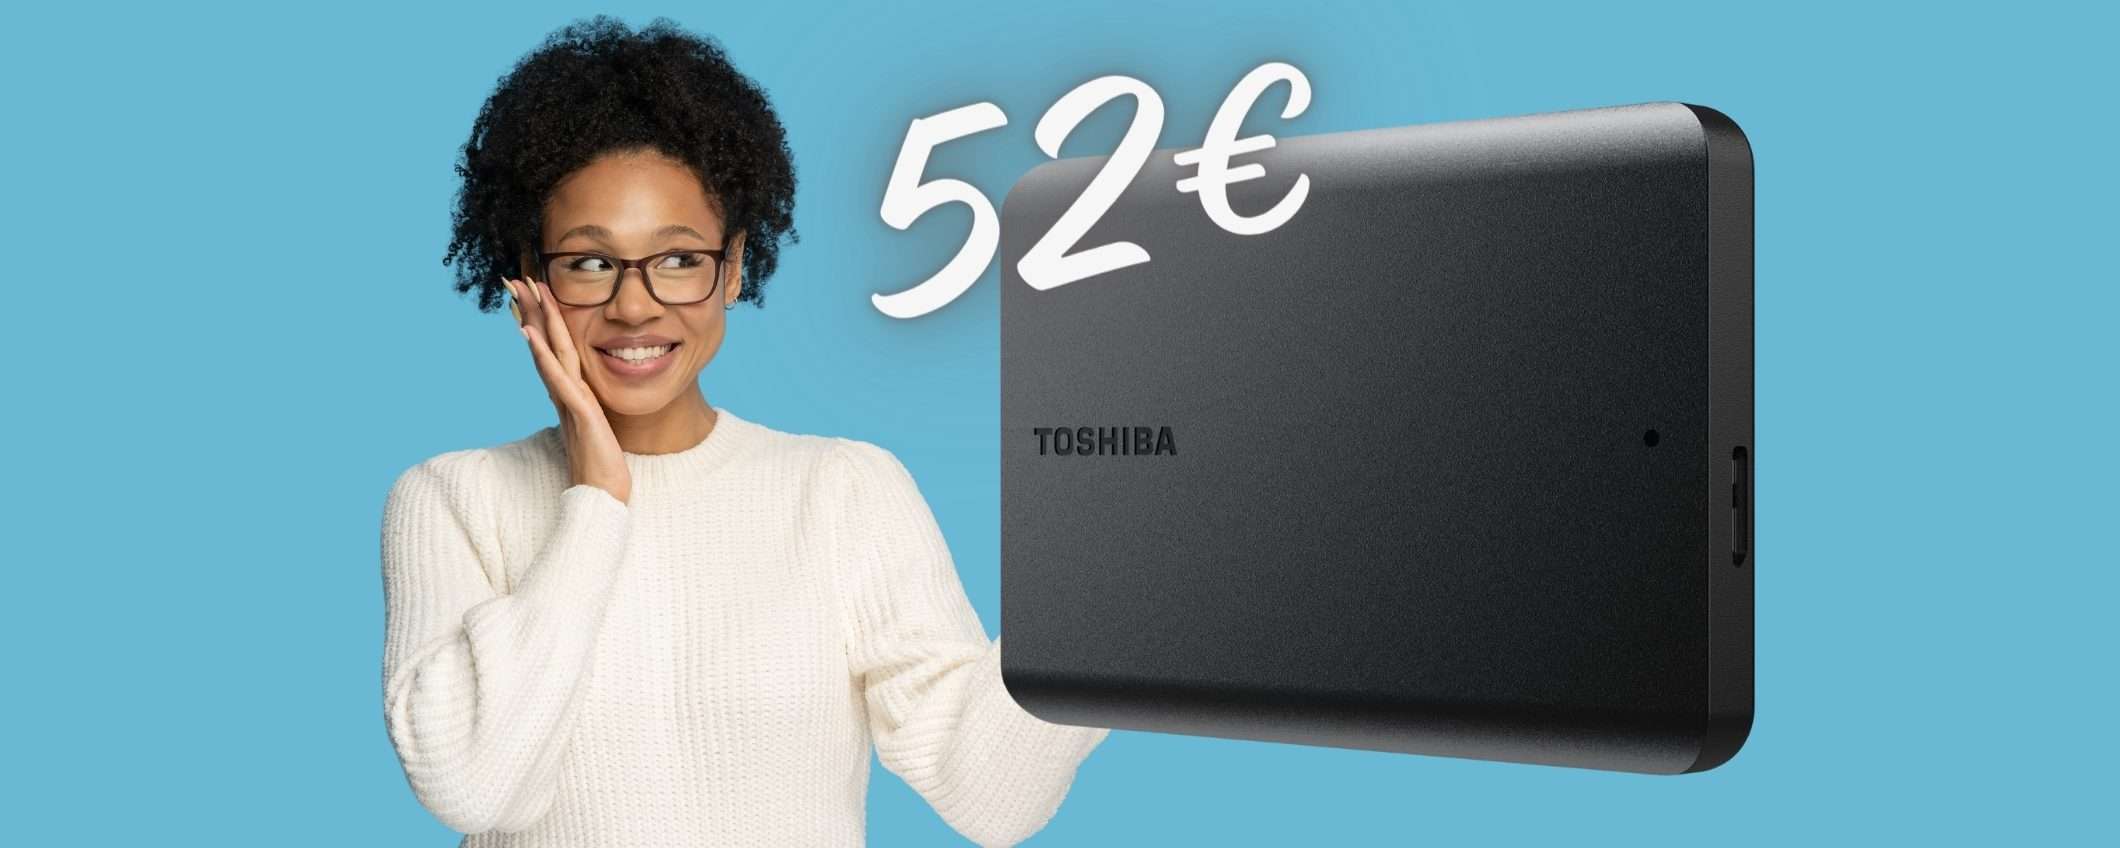 SOLO 52€ per l'Hard Disk esterno Toshiba da 1TB? Tutto vero su Amazon!